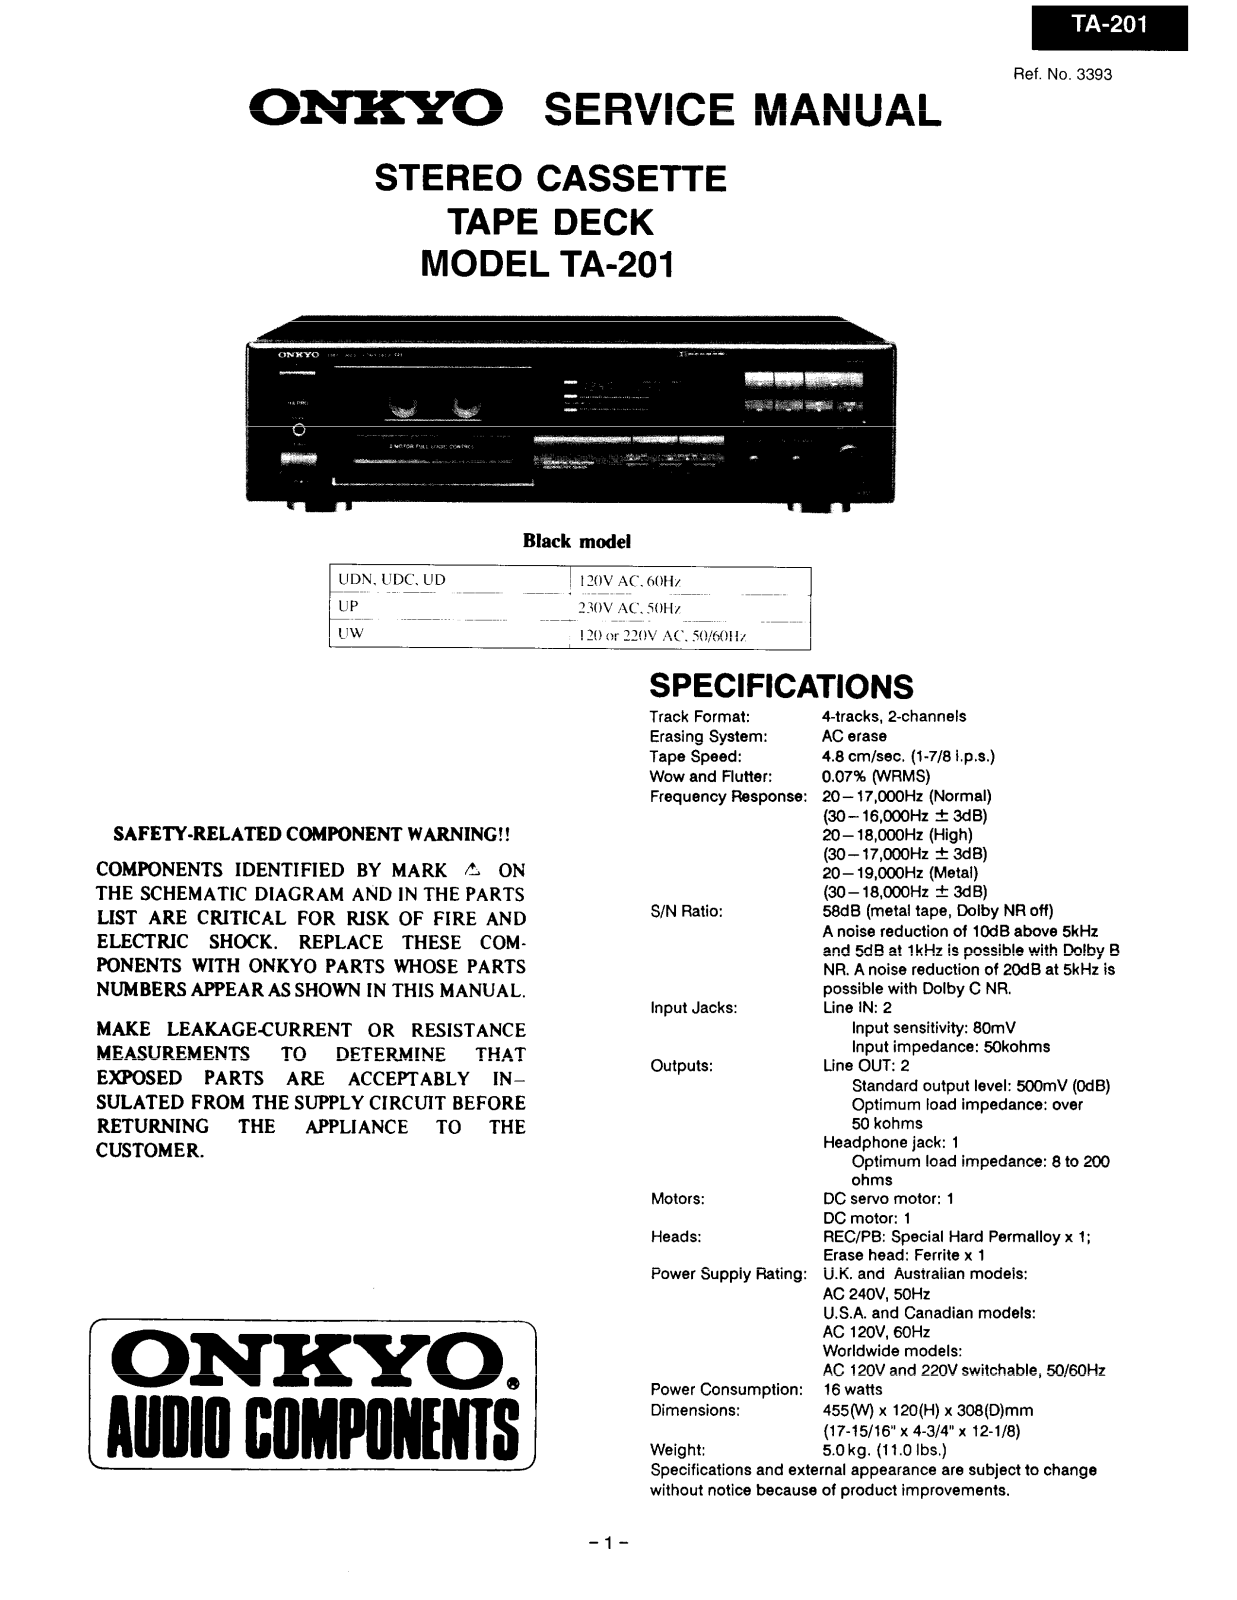 Onkyo TA-201 Service manual